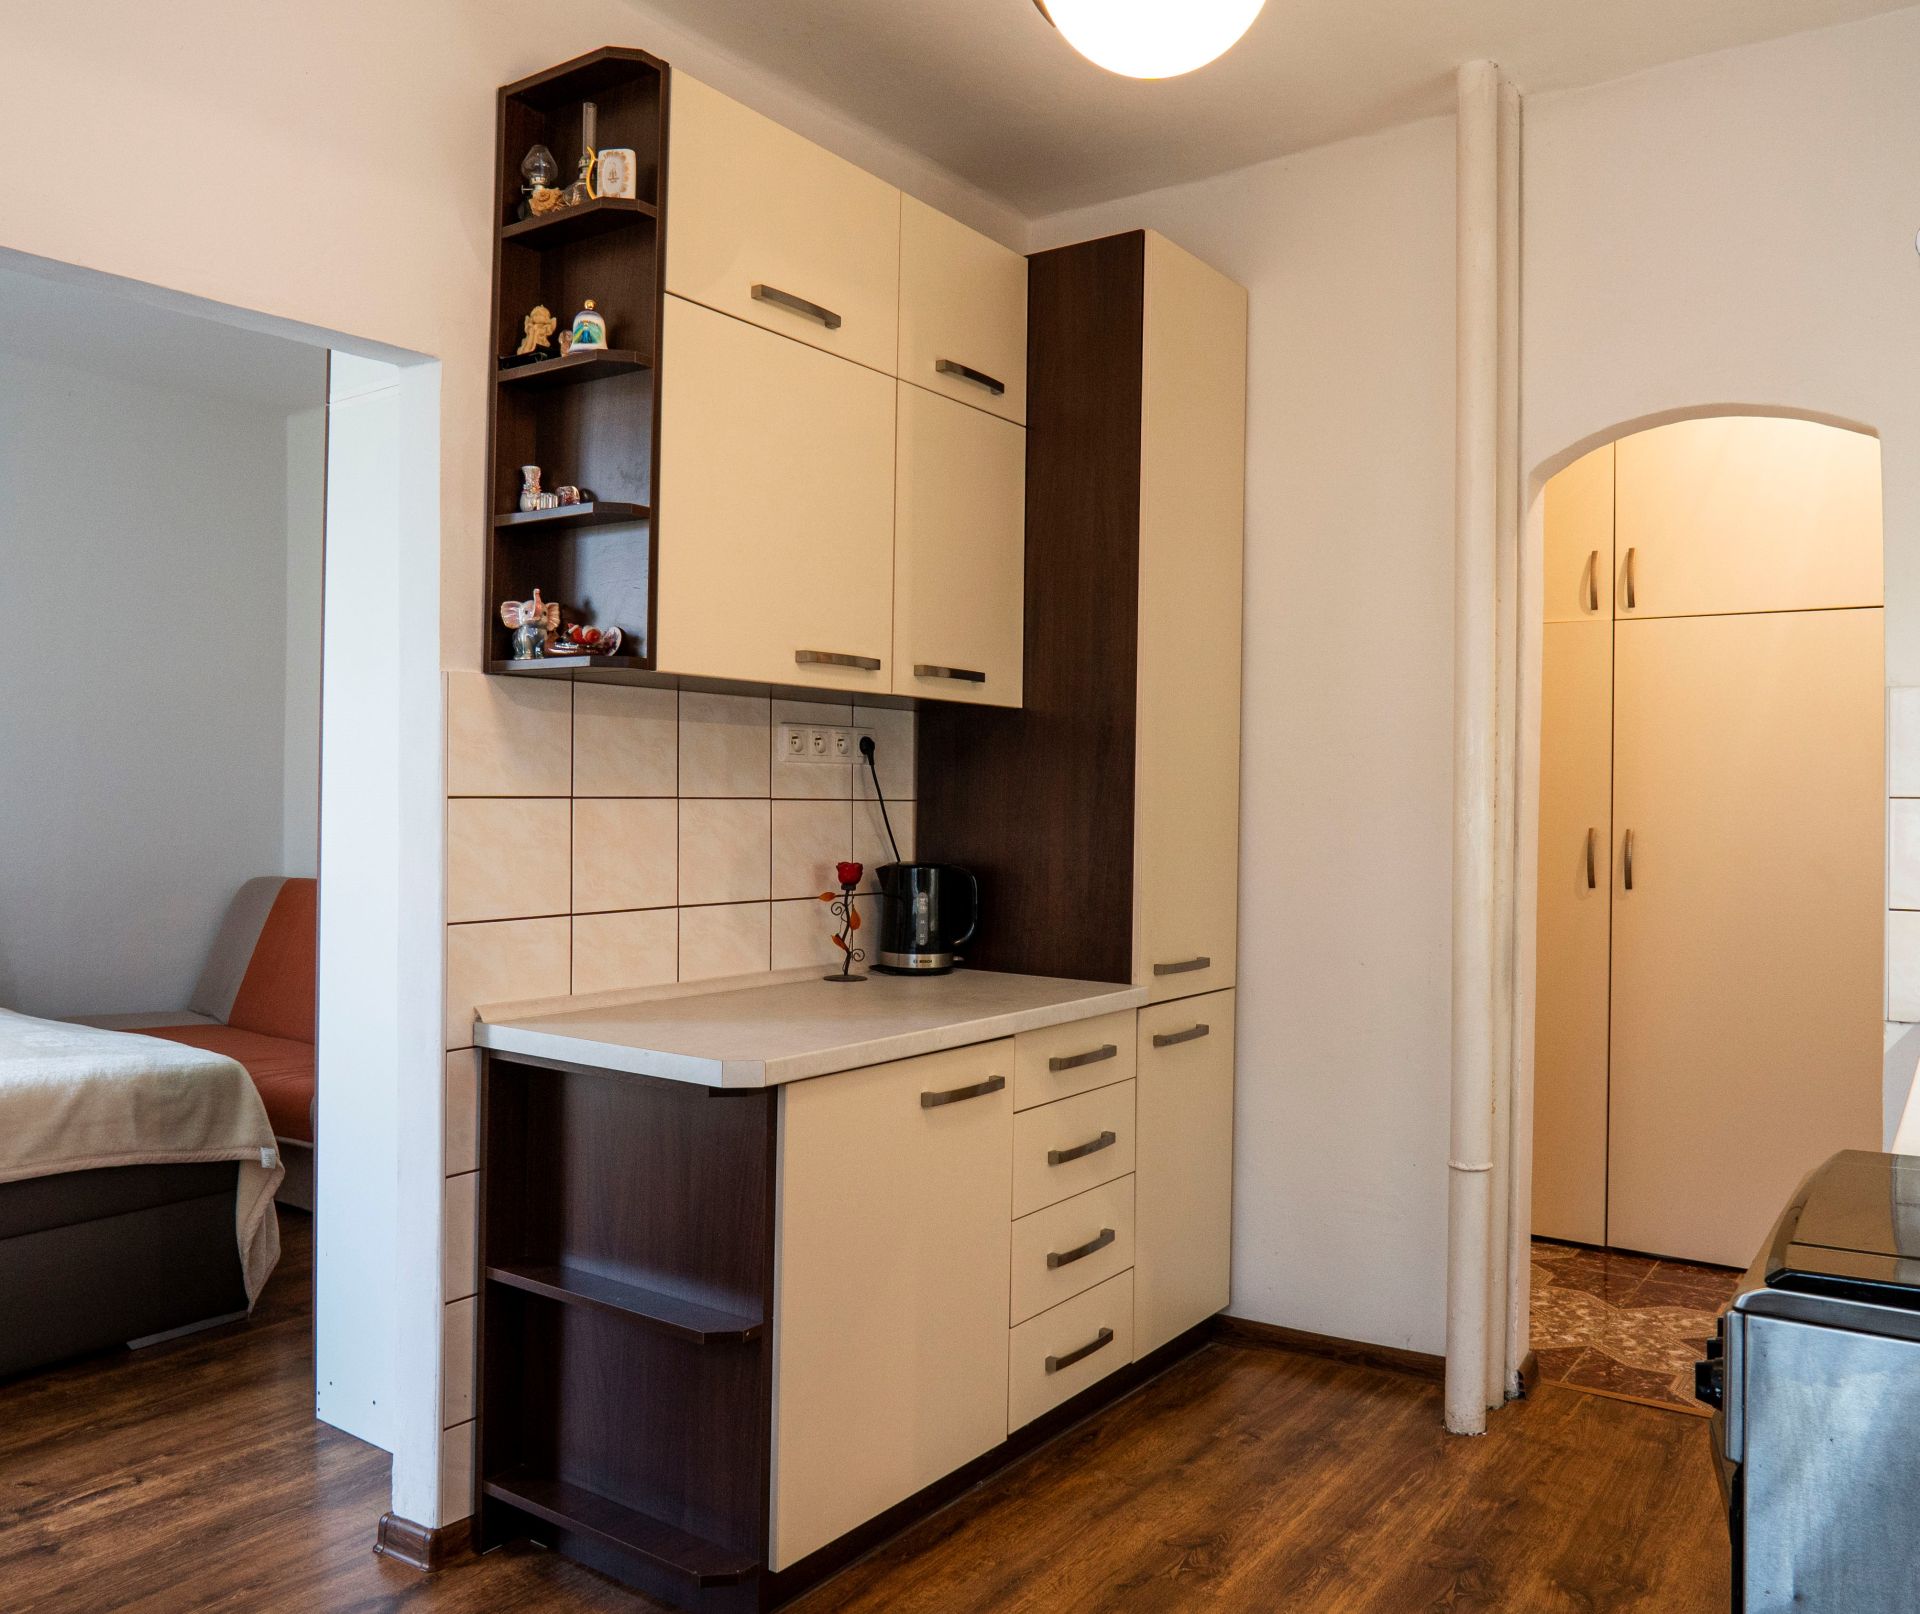 PREDANÝ: 2-izbový zrenovovaný byt s francúzskym balkónom, centrum, Gorazdova ulica, Spišská Nová Ves